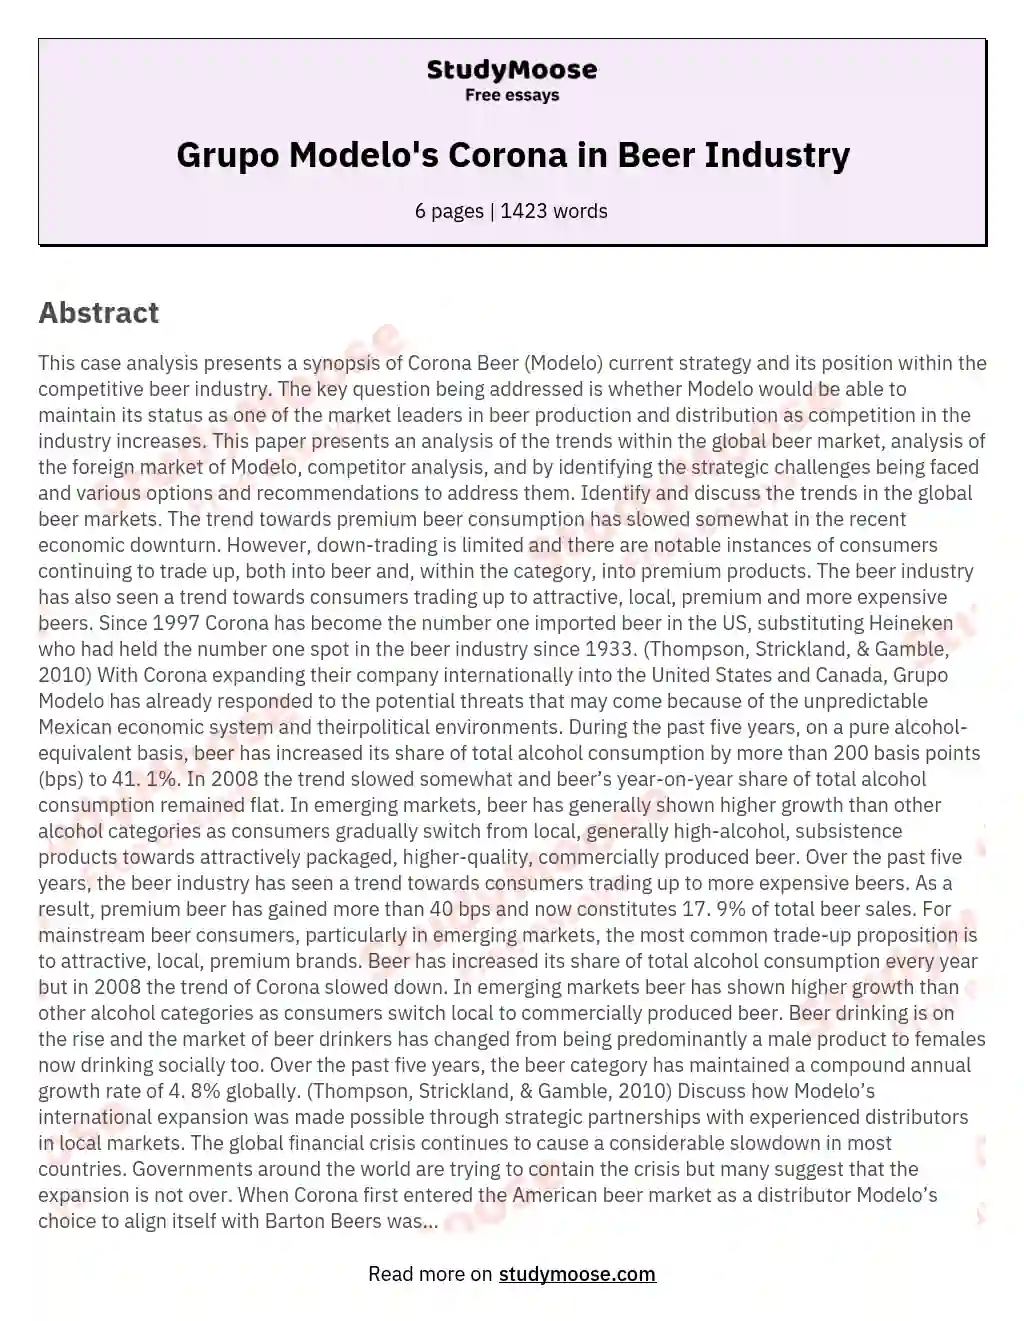 Grupo Modelo's Corona in Beer Industry essay